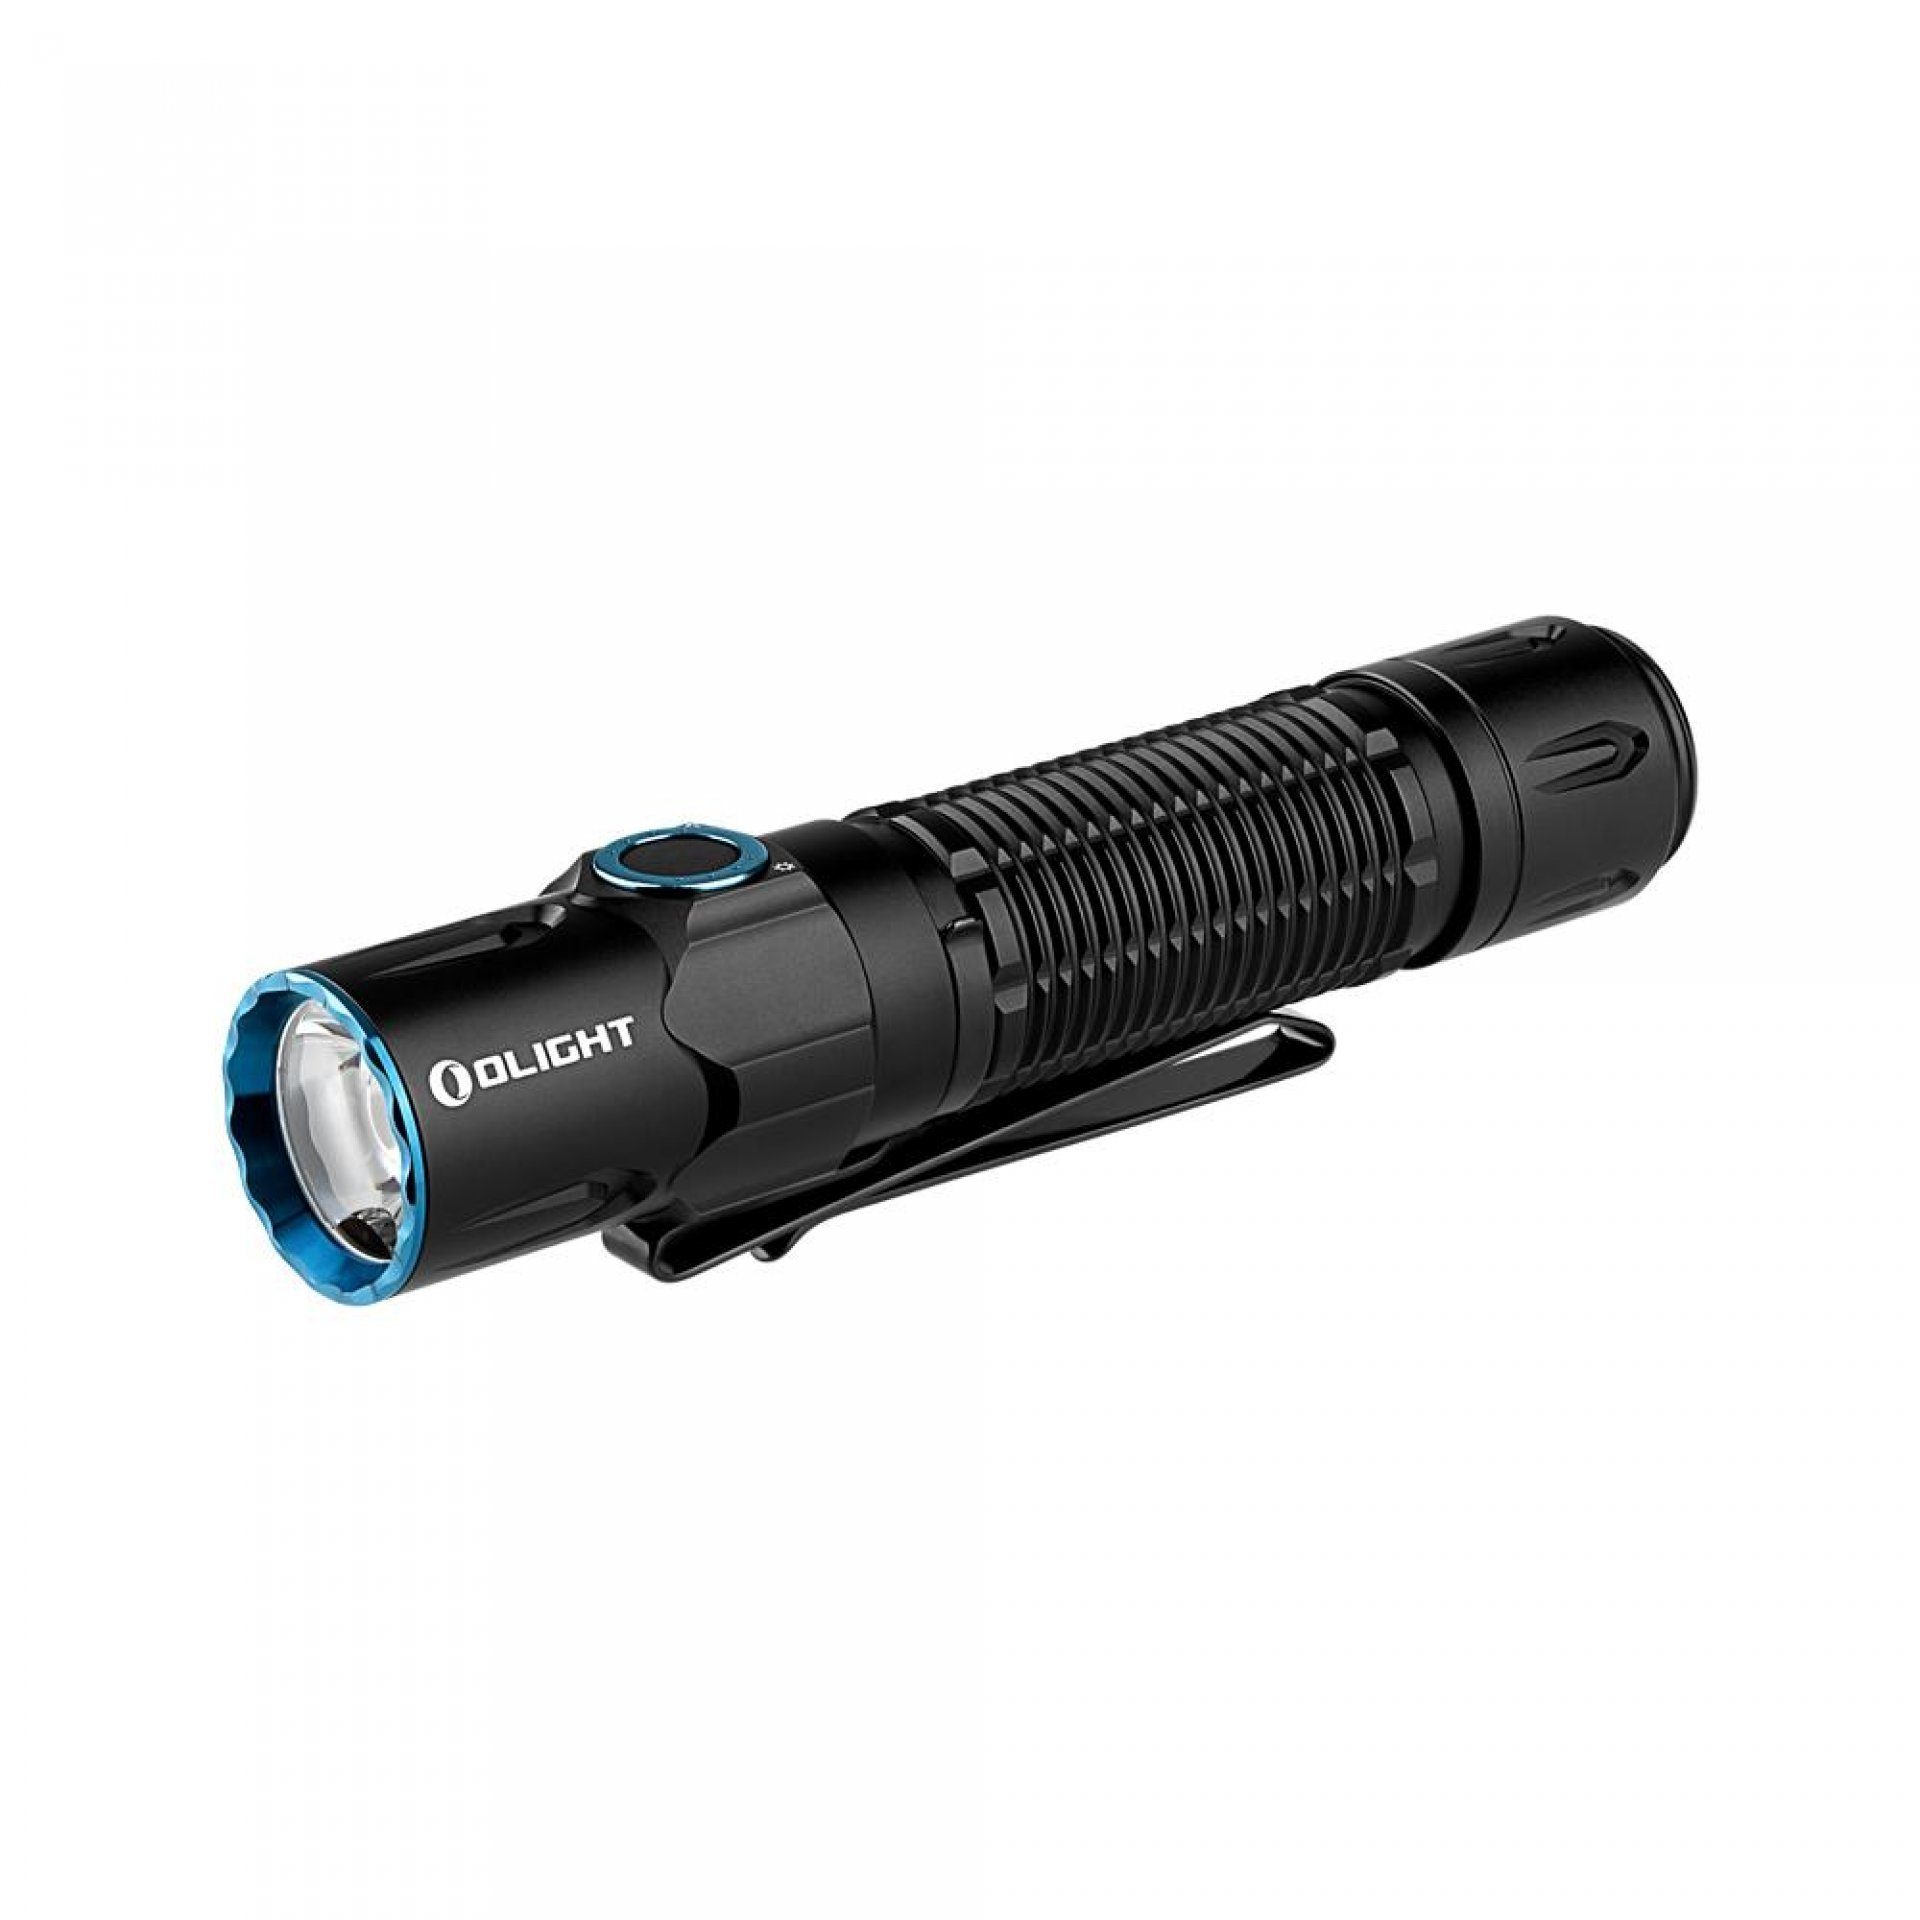 OLIGHT Taschenlampe Warrior 3S LED Taktische Superhelle Taschenlampe USB Wiederaufladbar, USB Wiederaufladbar mit Abstandssensor, für Alltag, Outdoor, etc